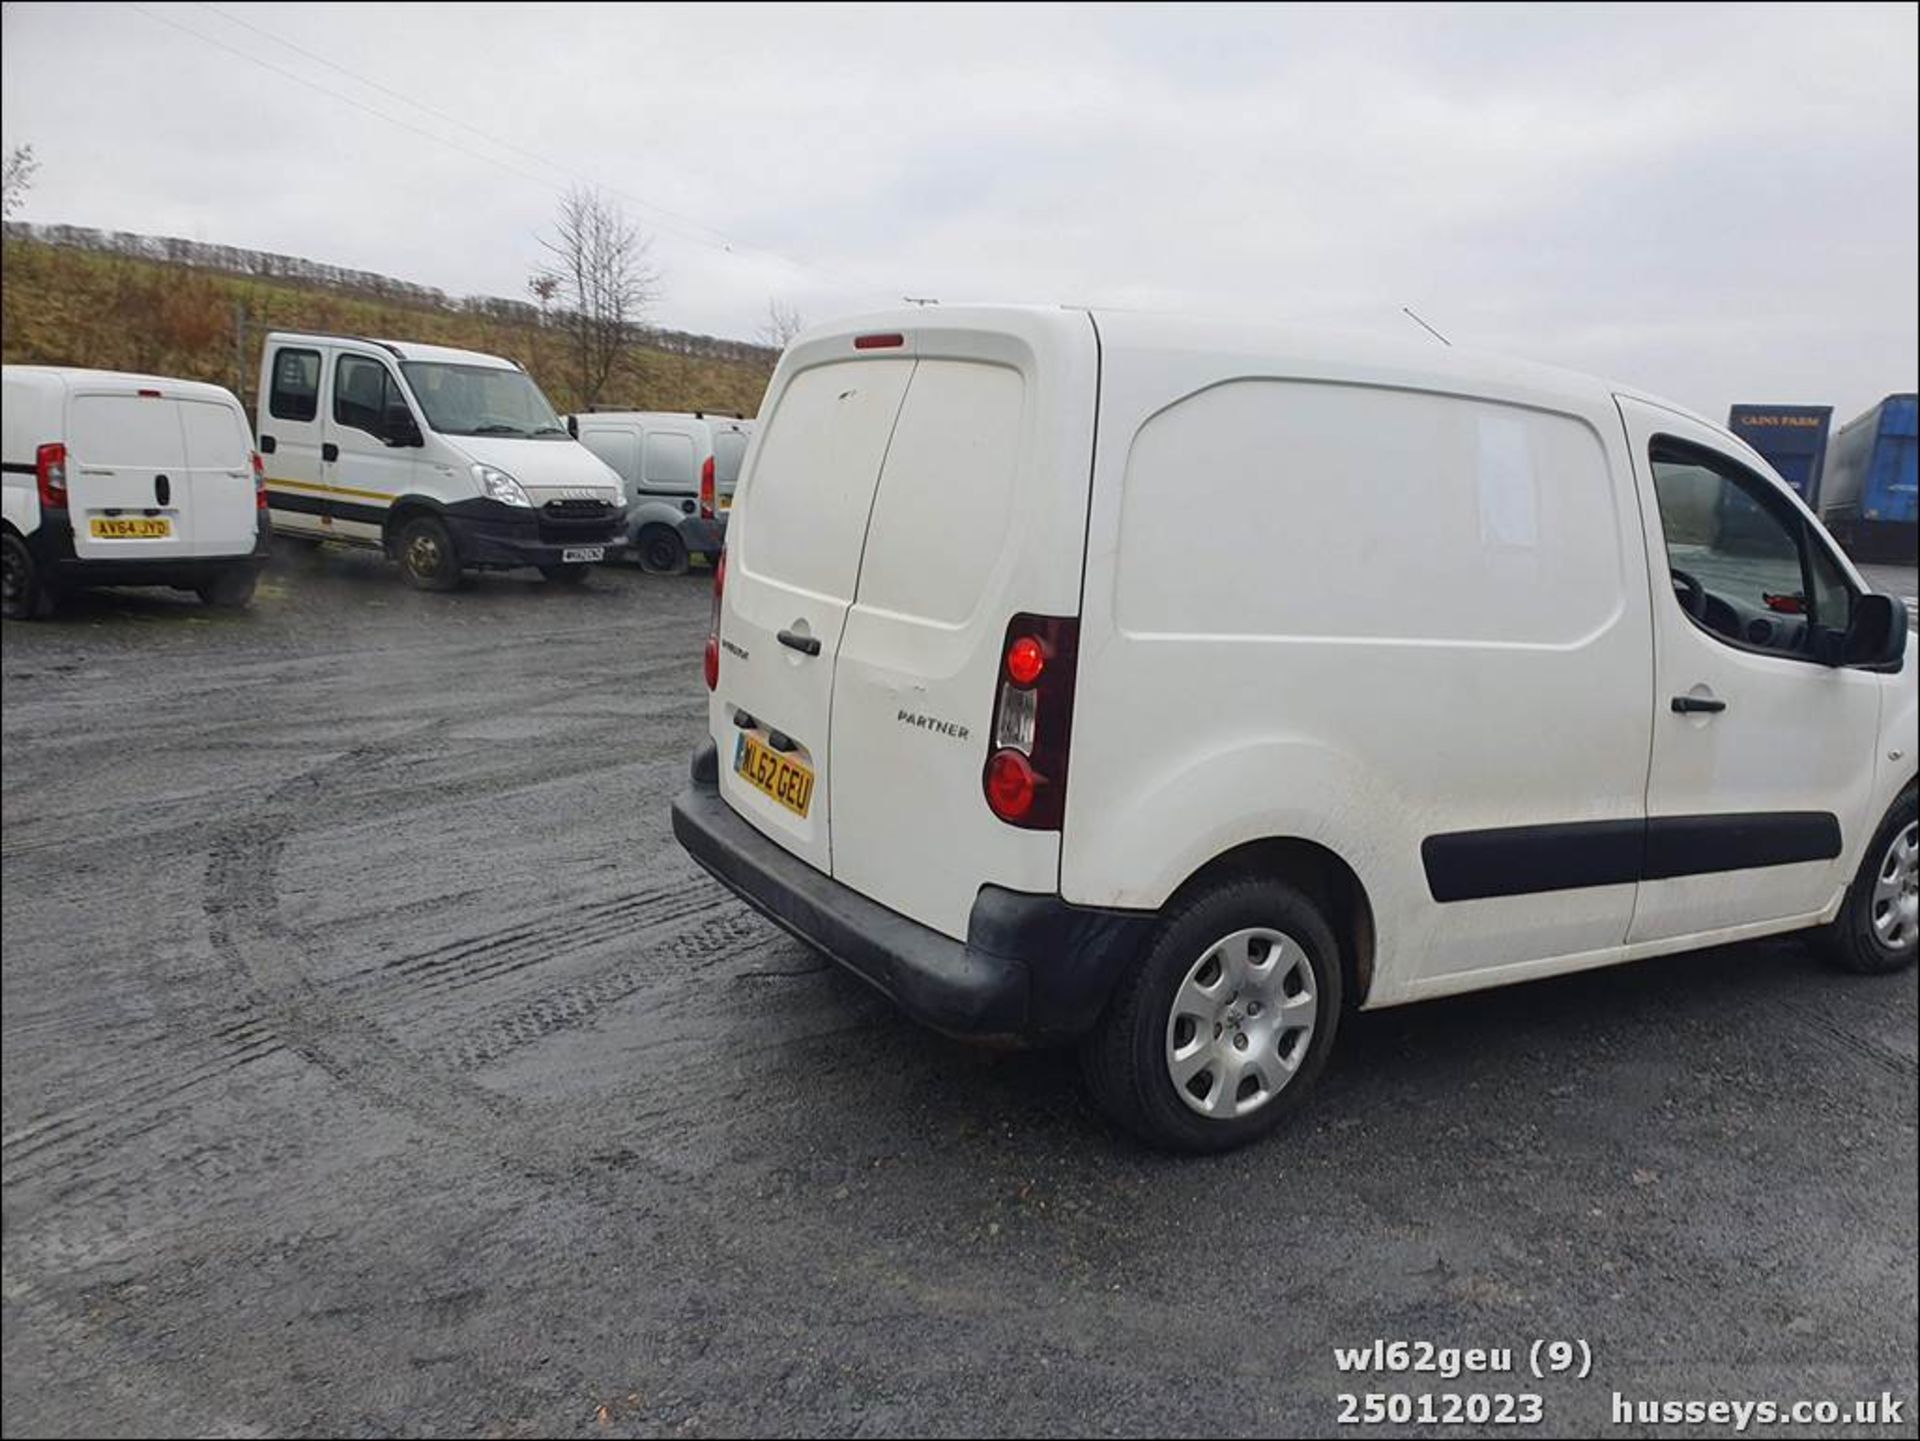 13/62 PEUGEOT PARTNER 625 SE L1 HDI - 1560cc 5dr Van (White, 98k) - Image 10 of 41